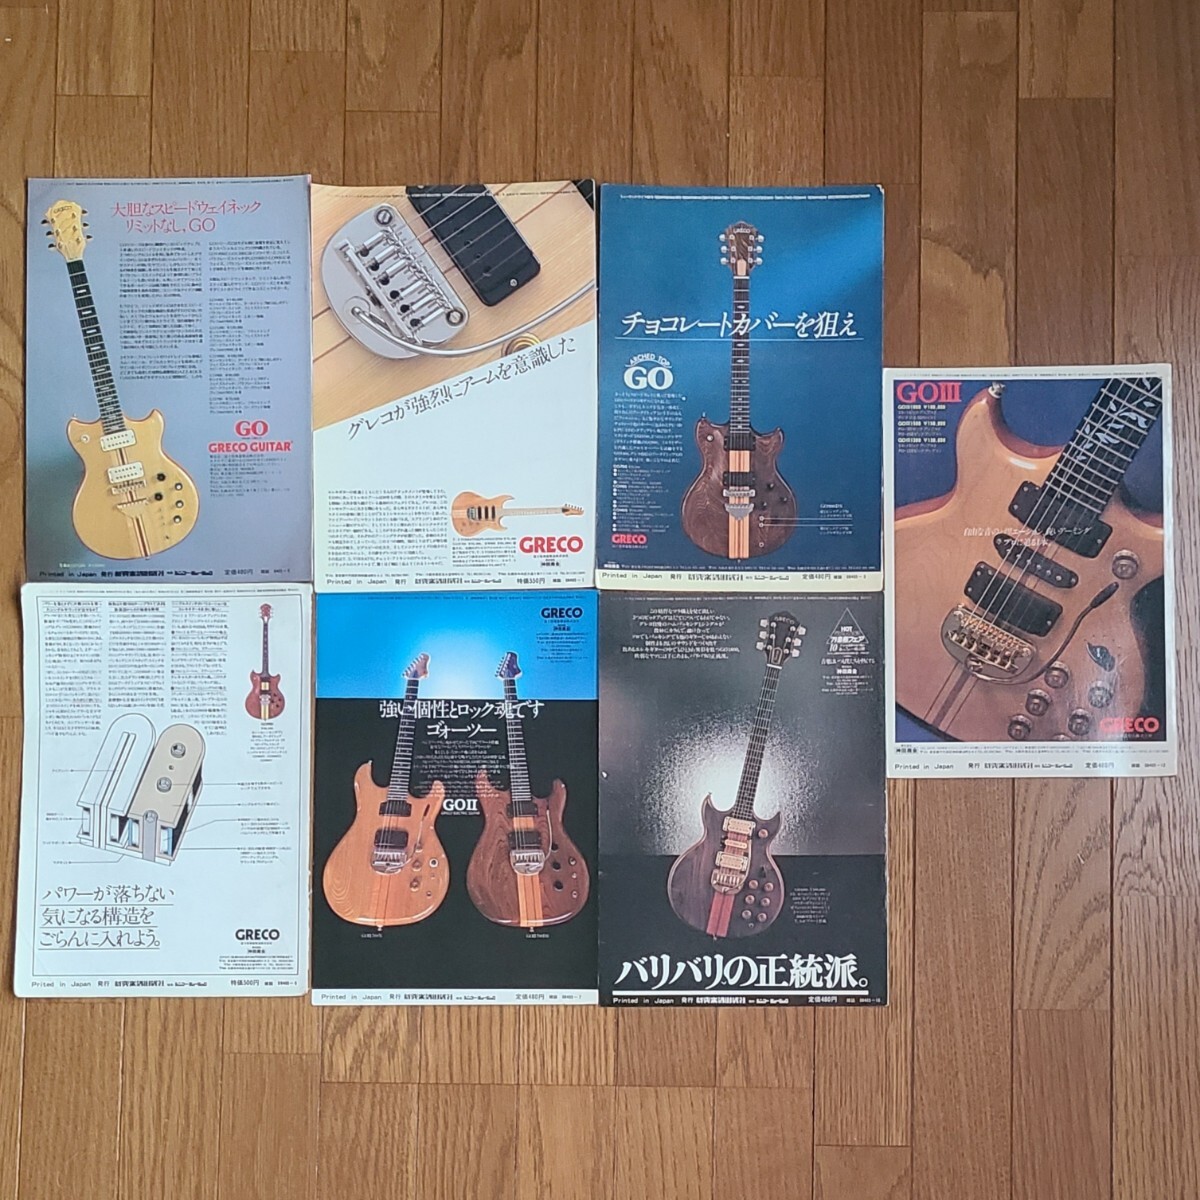 GRECO グレコ ギター広告 1978年 1979年 【切り抜き】GRECO GO GOⅡ GOⅢ モデル※雑誌裏表紙/傷みあり (裏面 日本ギブソン)の画像1